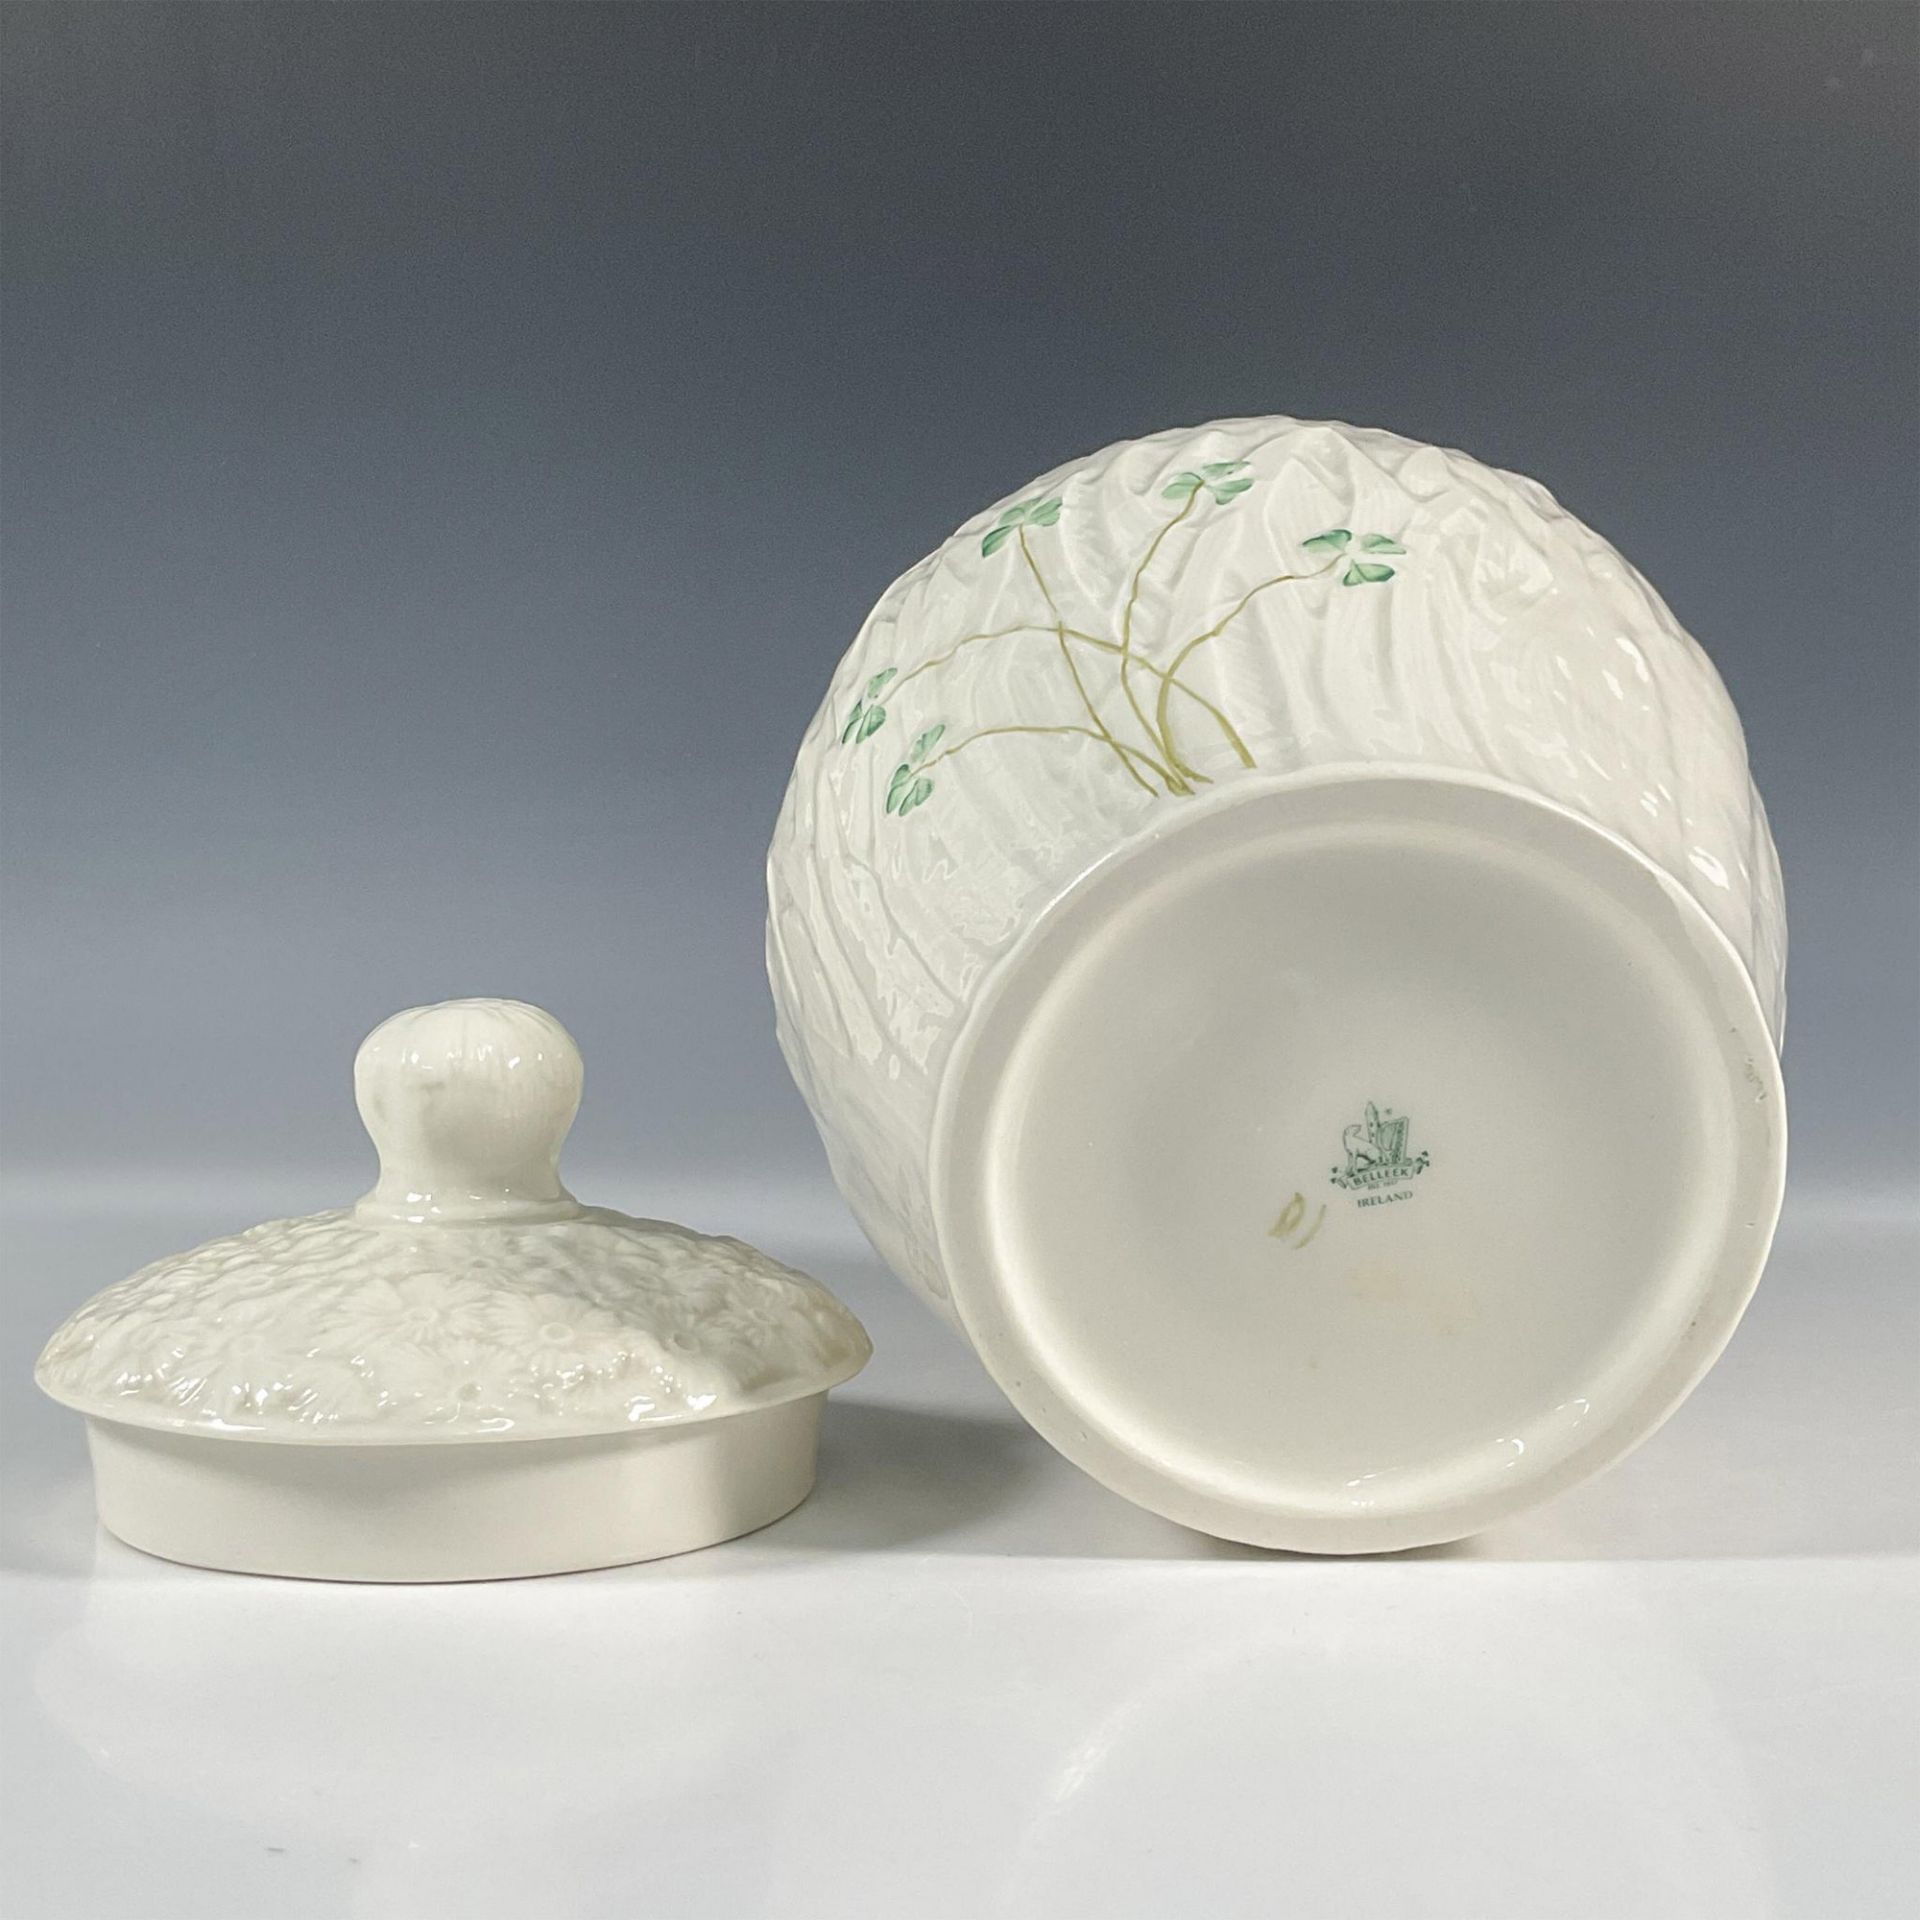 Belleek Pottery Porcelain Lidded Biscuit Barrel, Daisy - Image 4 of 4